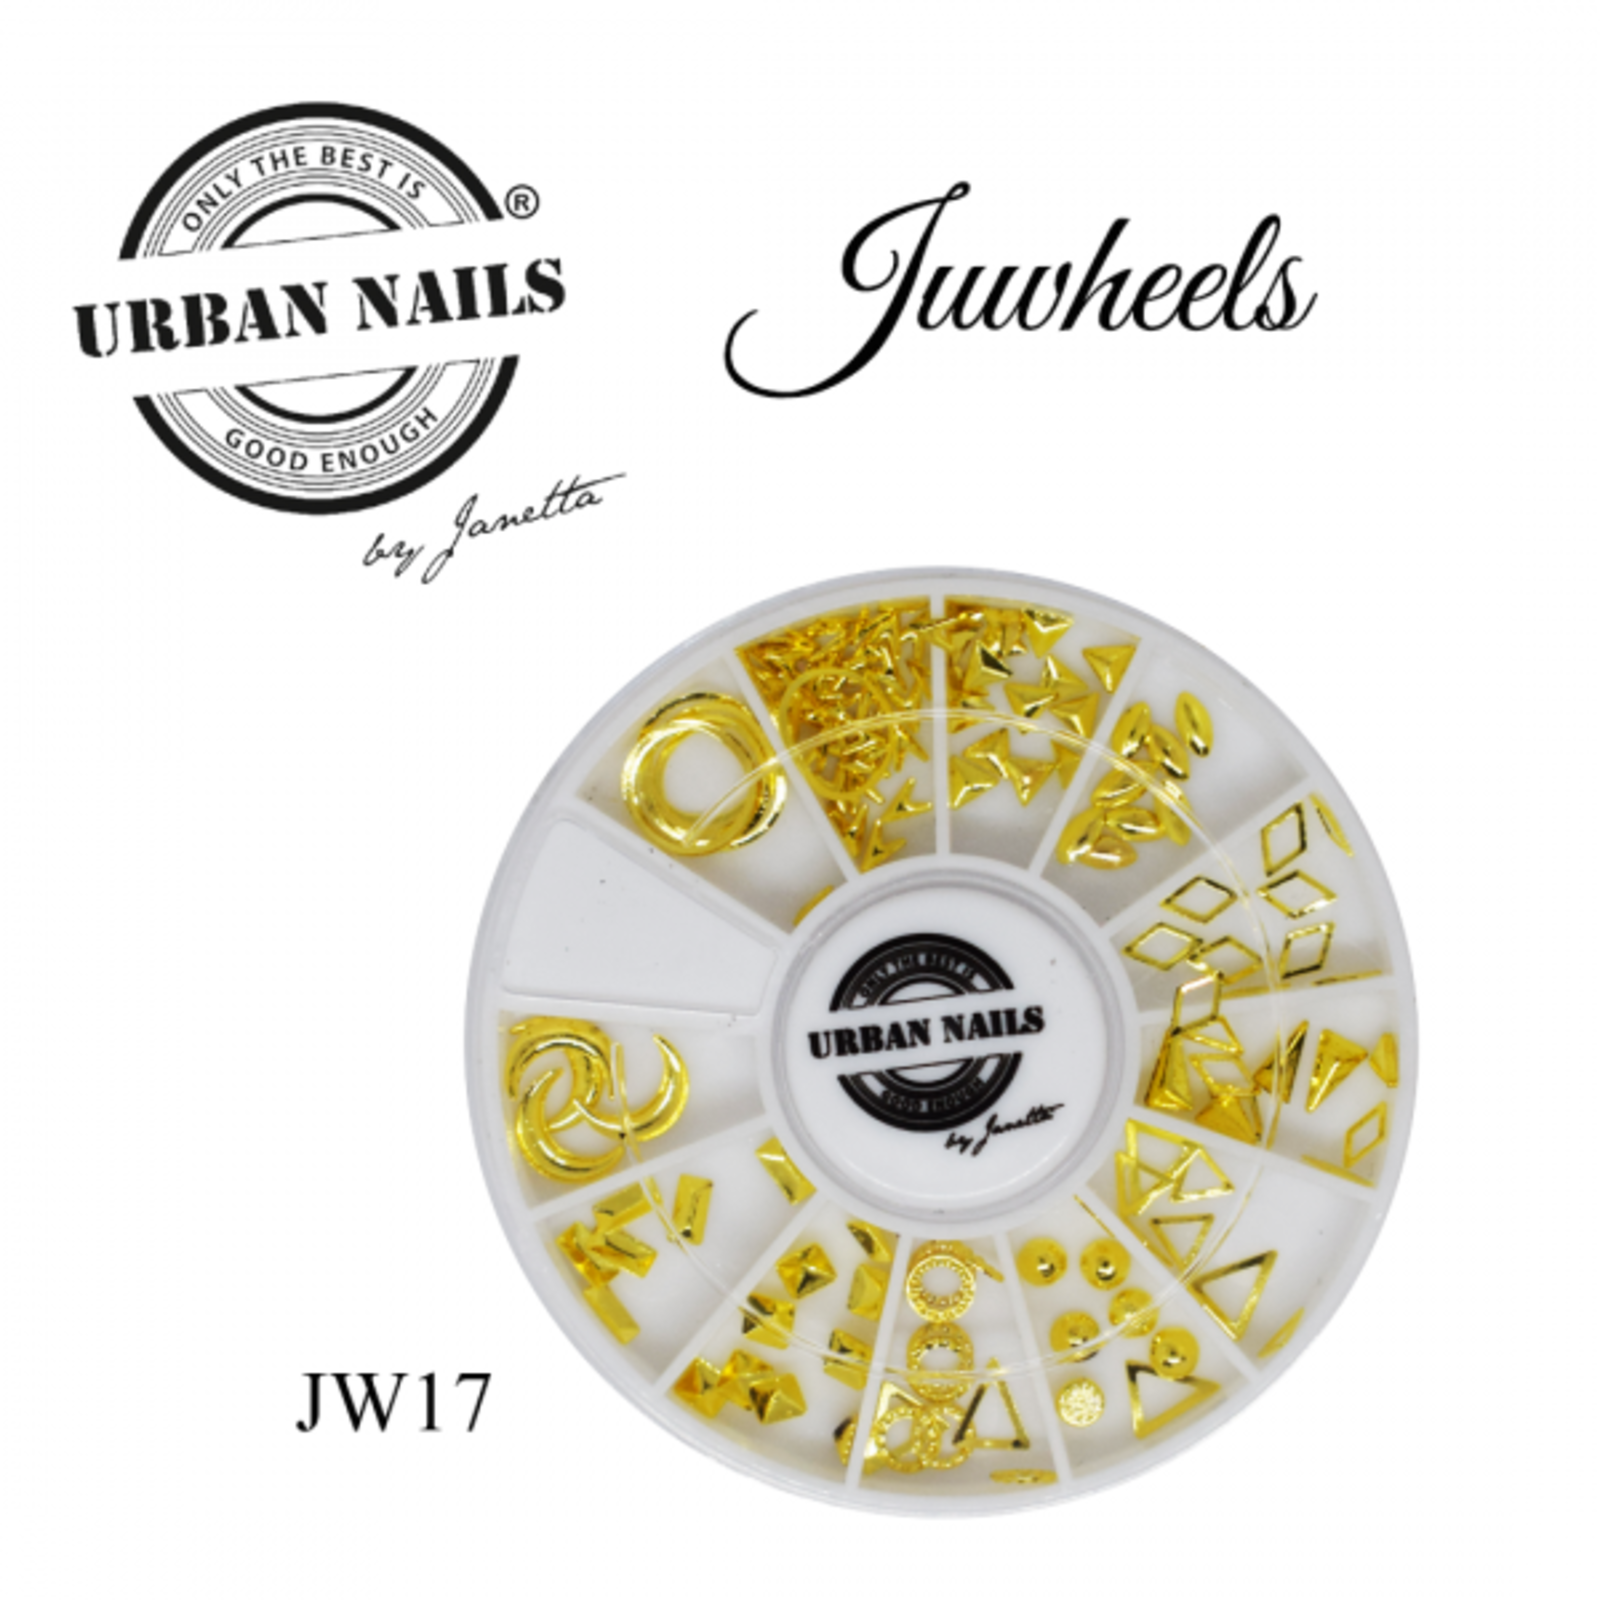 Urban nails Juwheel 17